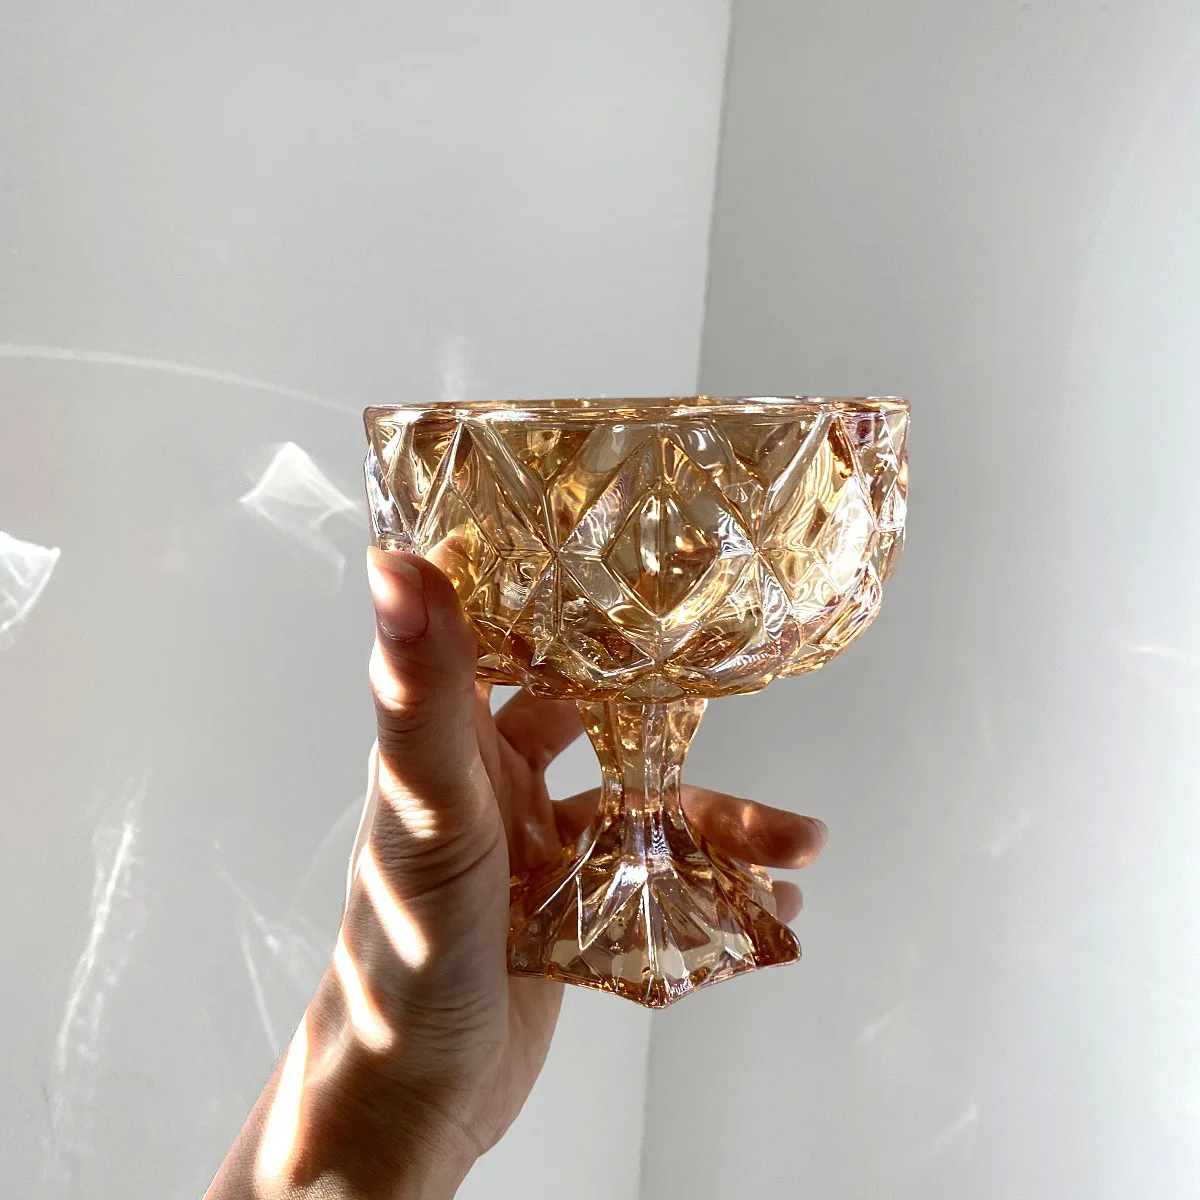 Ins Wind-vaso de cristal Retro con relieve de ámbar, copa de pie alto para ensalada, fruta, postre, Yogurt, helado, copa de vino